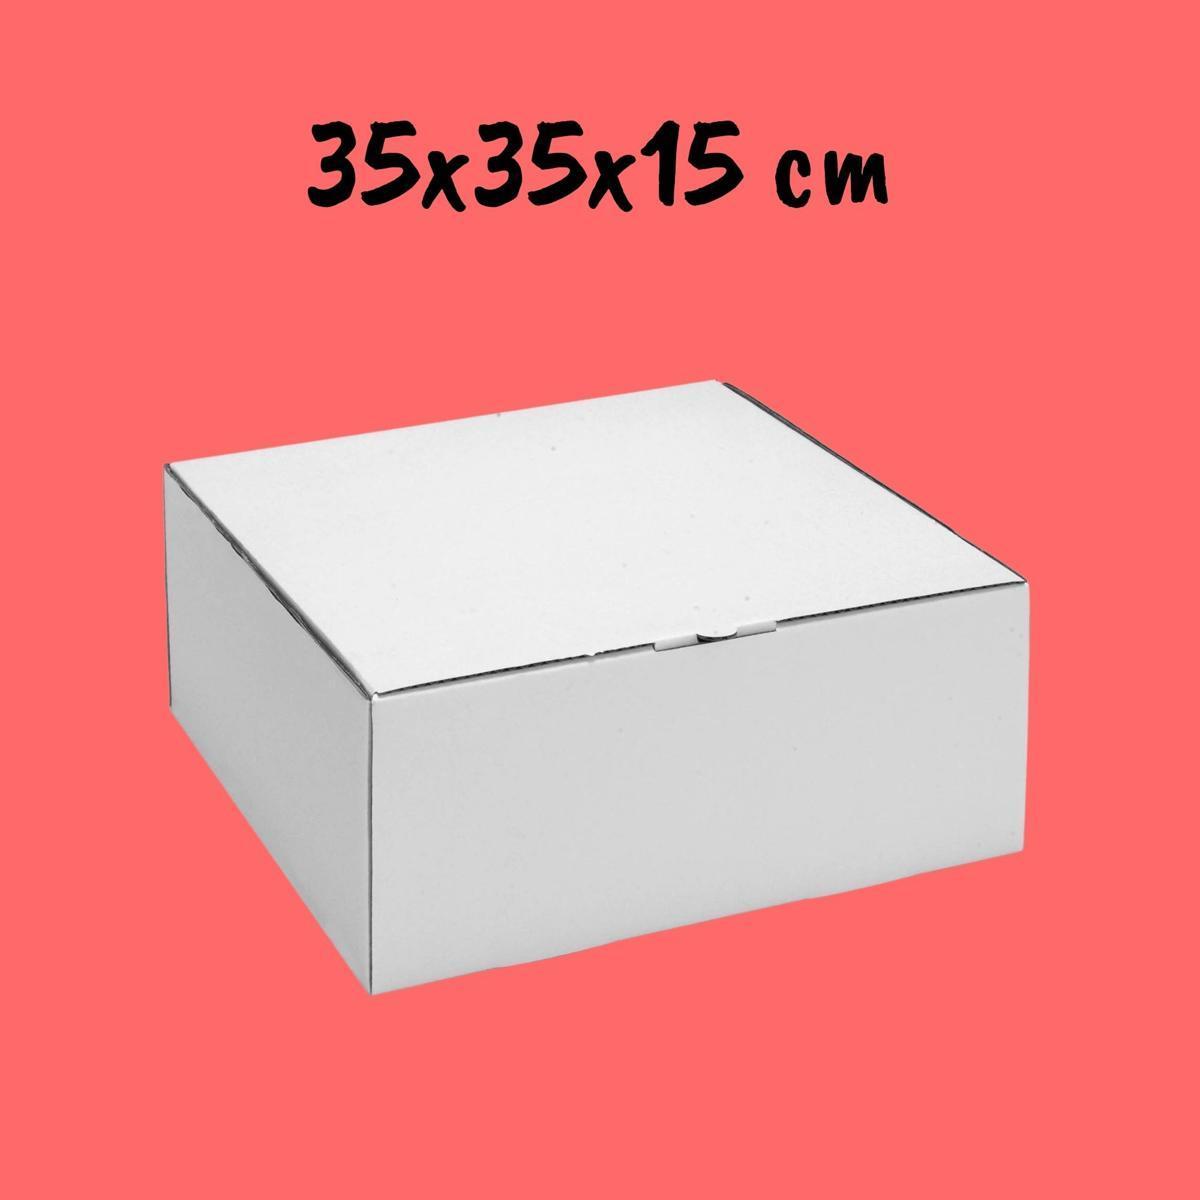 Caixa Para Bolo 35x35x15cm - Pacote com 10 unidades